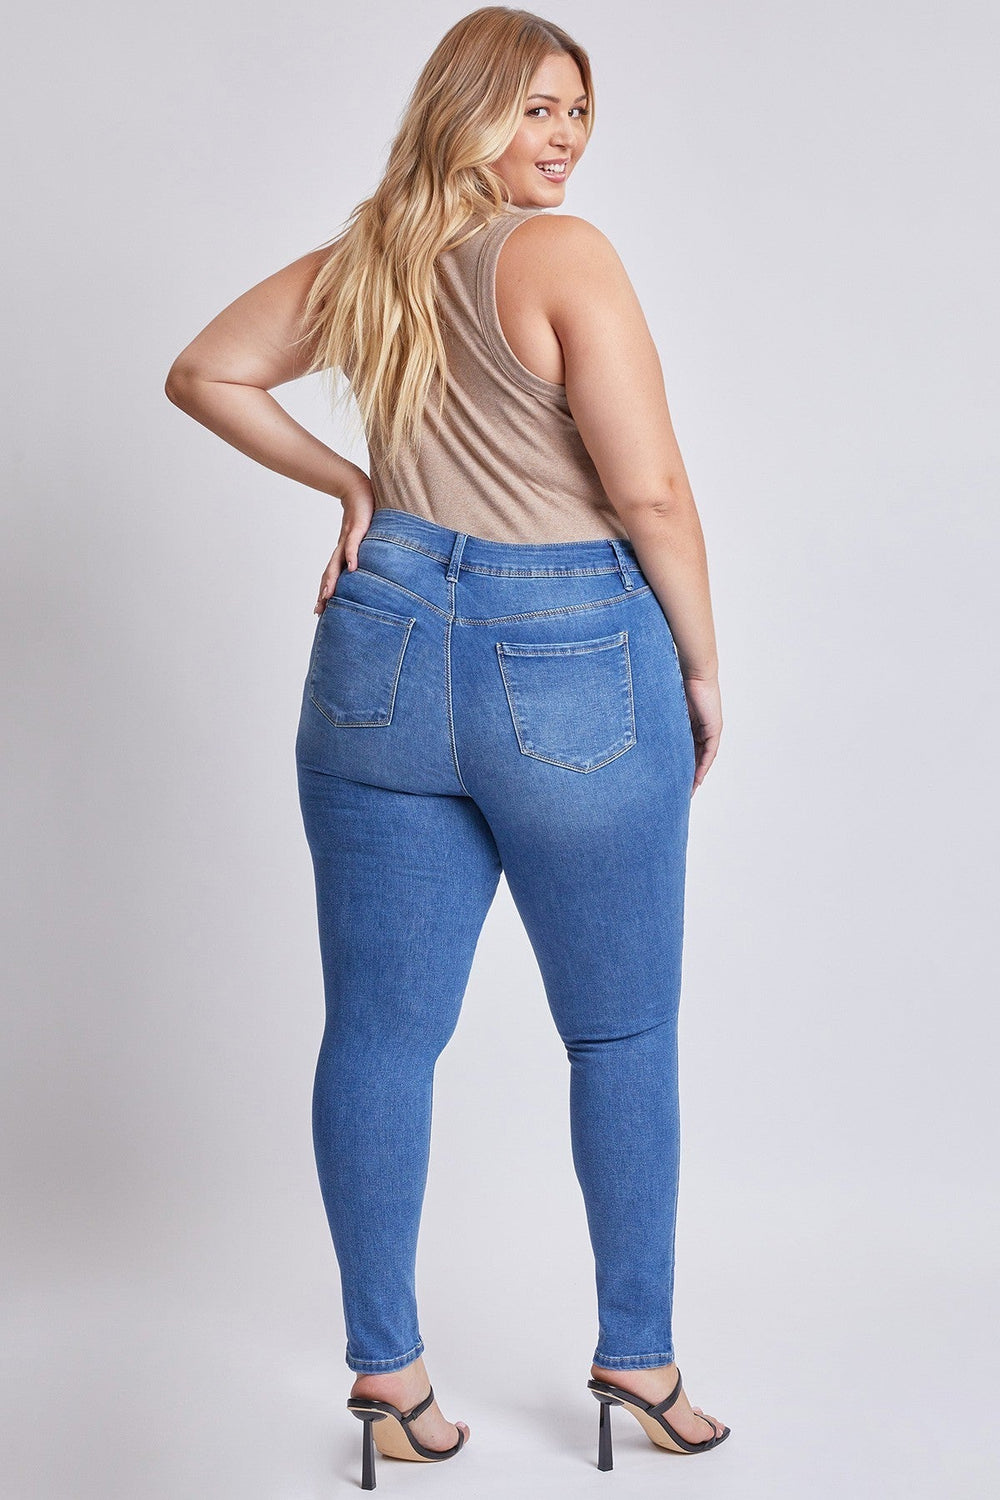 YMI Jeans Plus Size Sarah Basic 5 Pocket High-Rise Ripped  Skinny Jean - Medium Wash